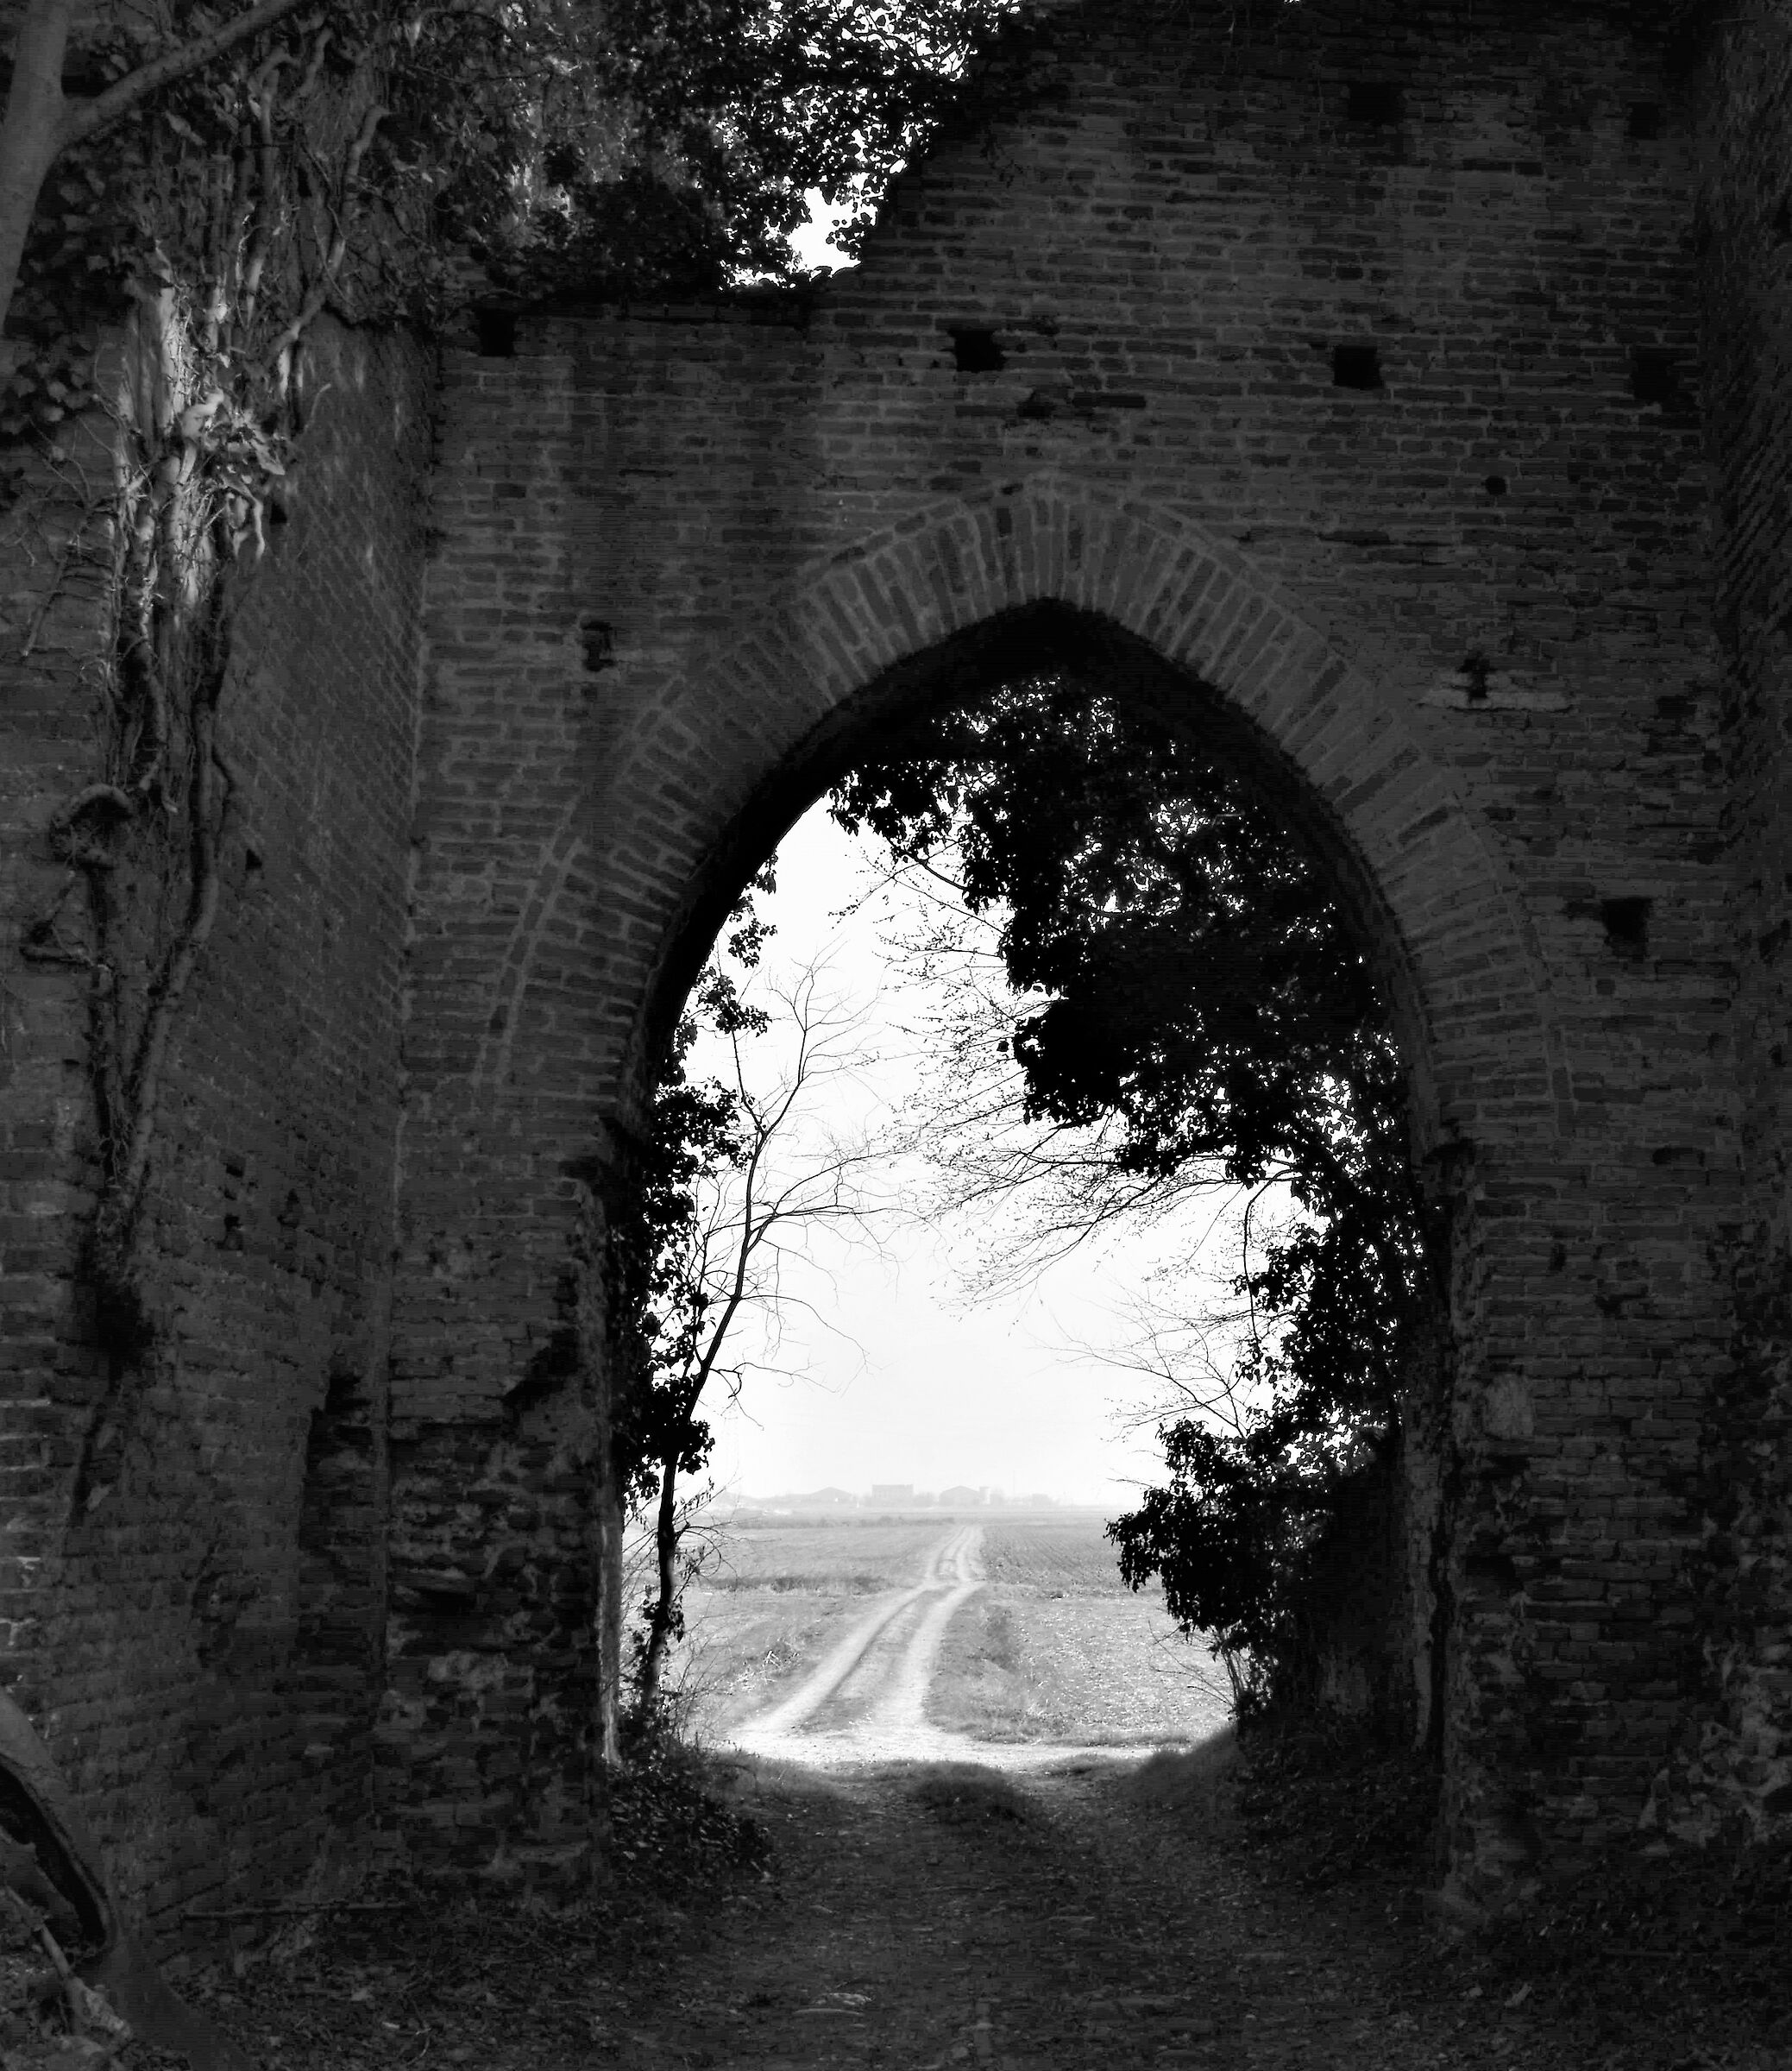 ma che portale del castello.... marcondirodirondo'........